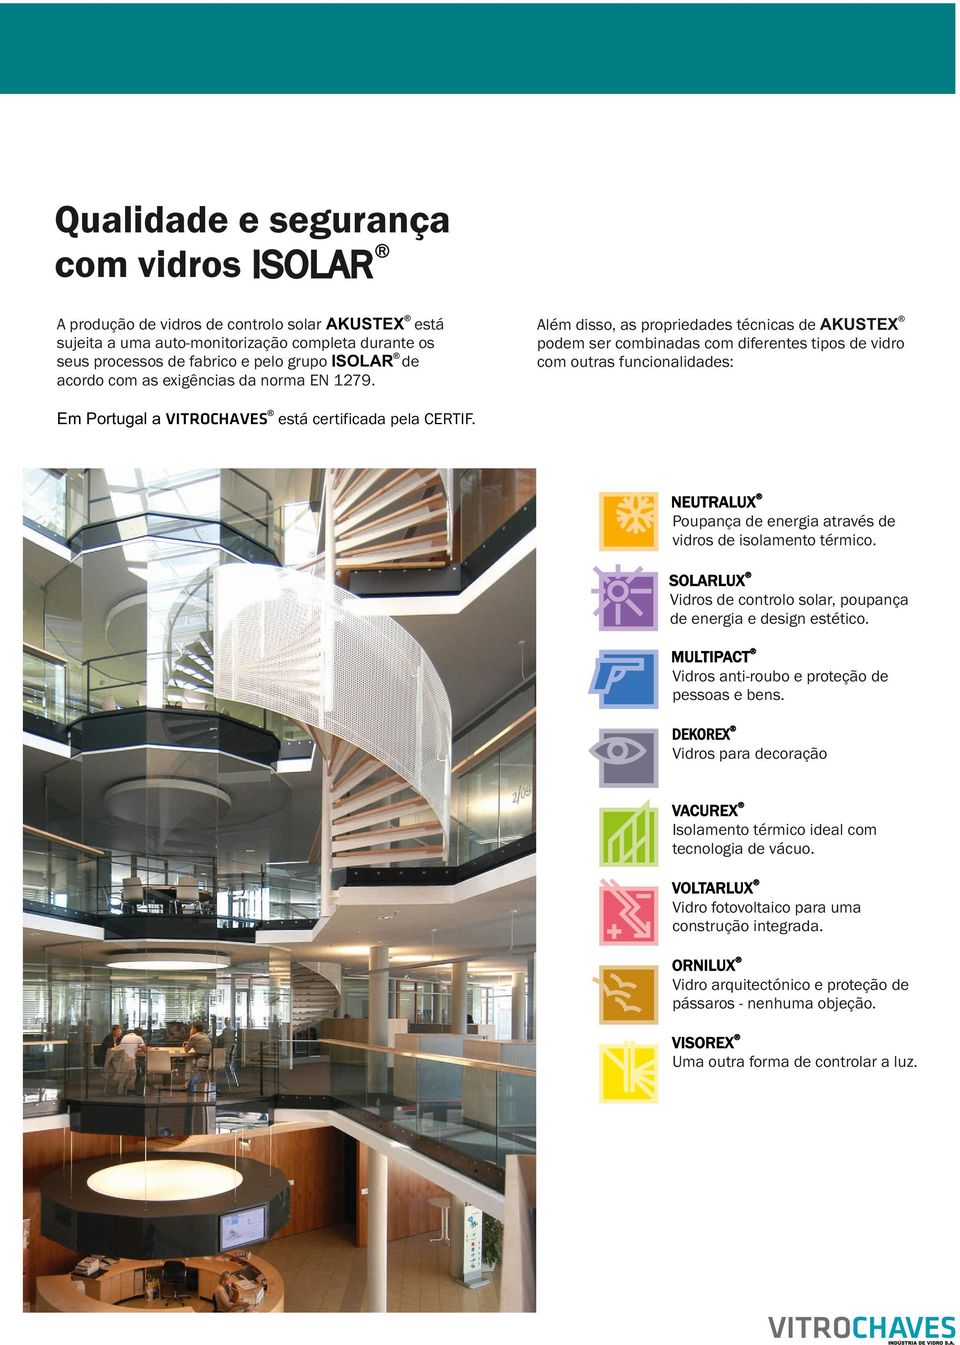 Além disso, as propriedades técnicas de AKUSTEX podem ser combinadas com diferentes tipos de vidro com outras funcionalidades: Em Portugal a VITROCHAVES está certificada pela CERTIF.